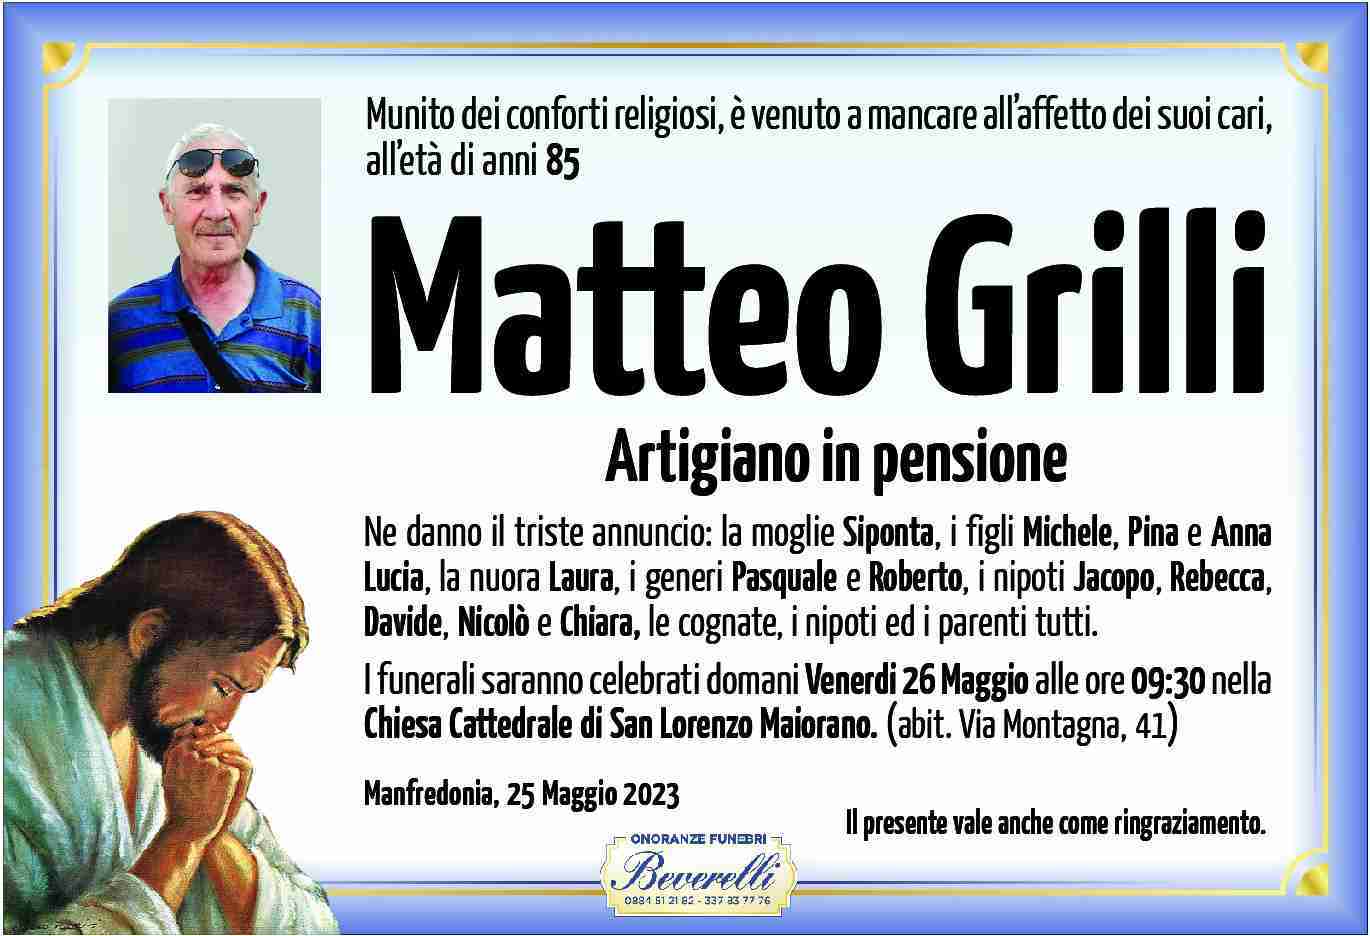 Matteo Grilli